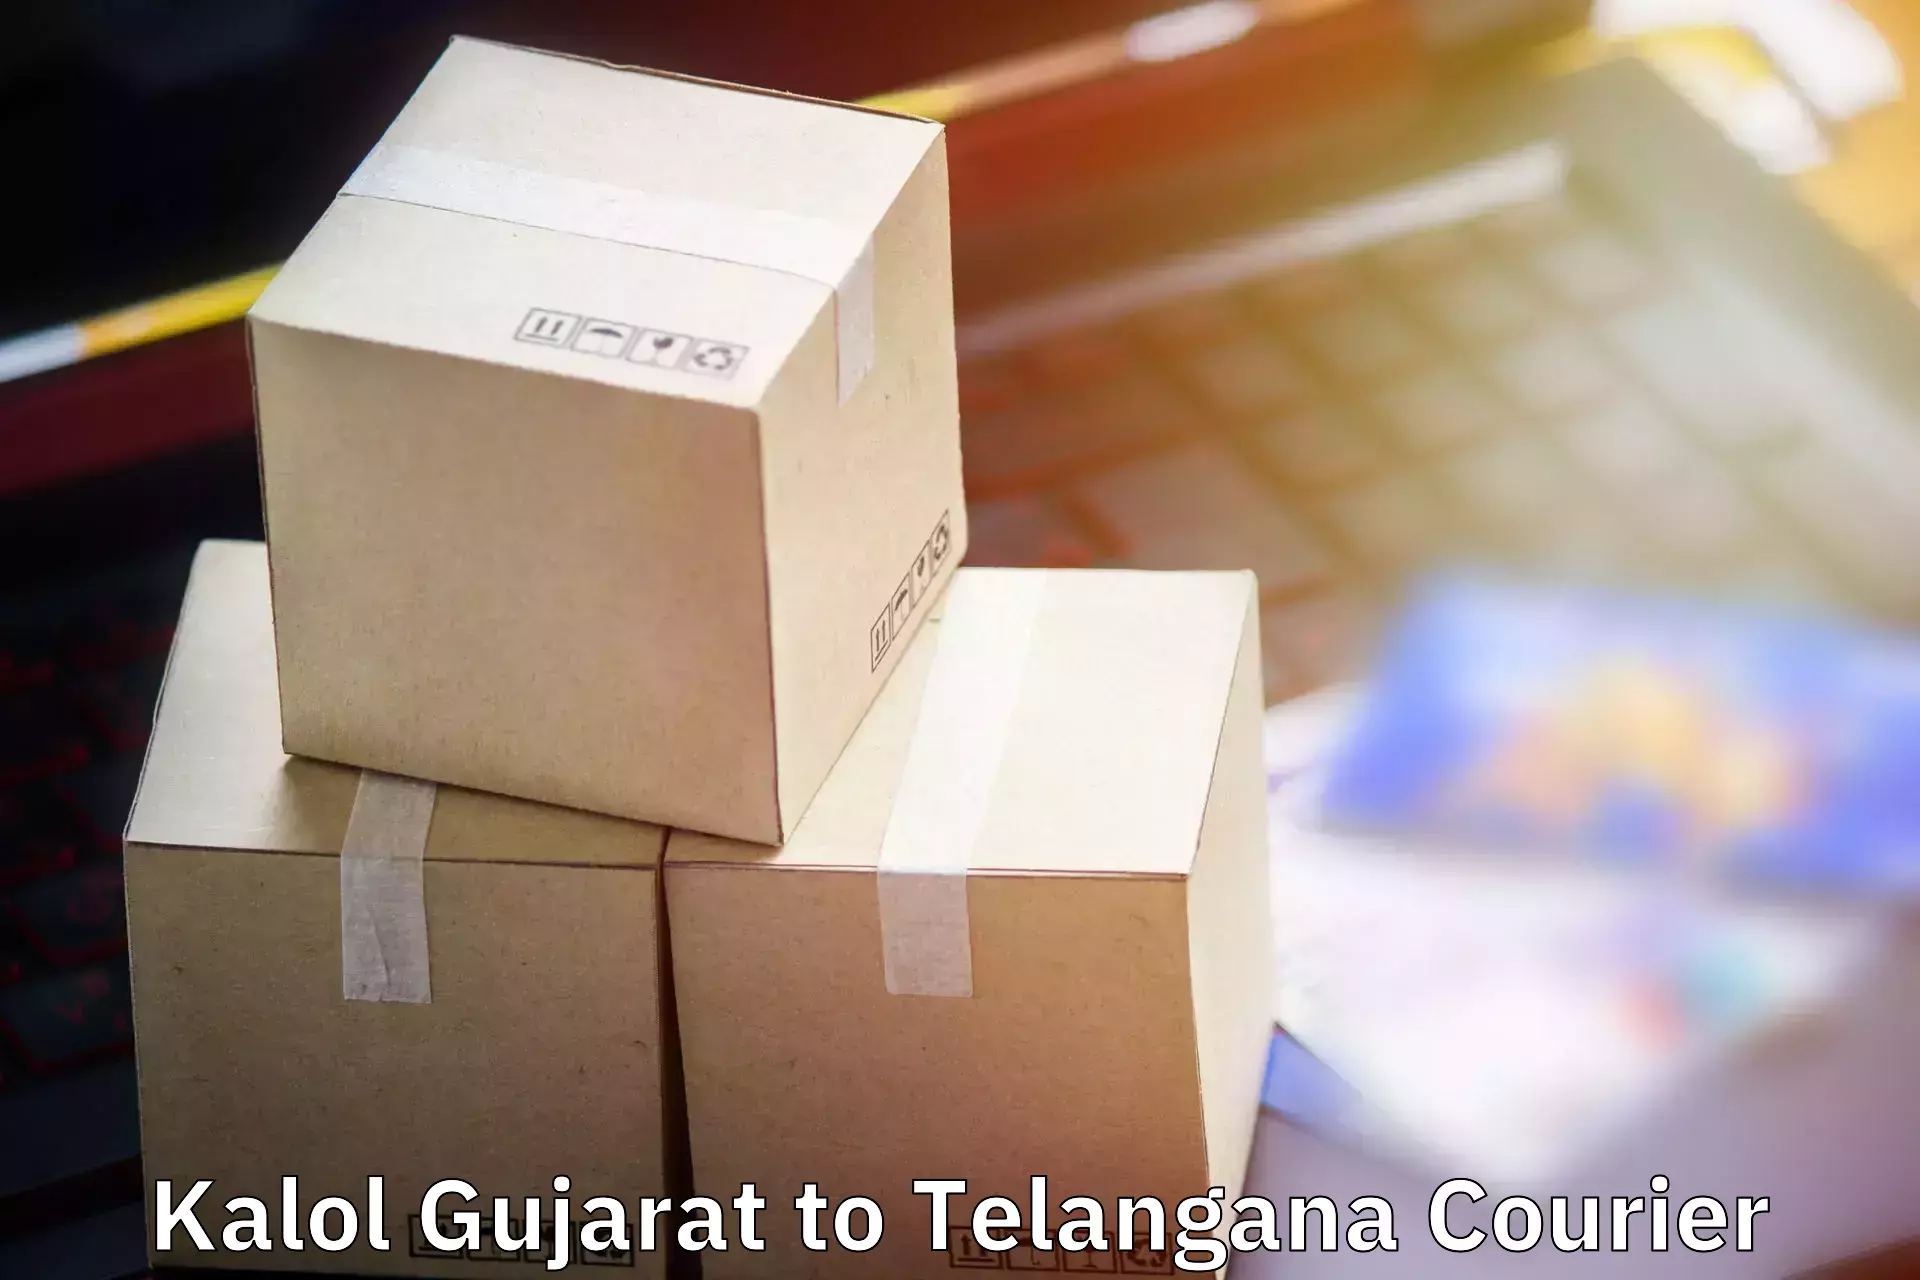 Baggage transport services Kalol Gujarat to Madgulapally